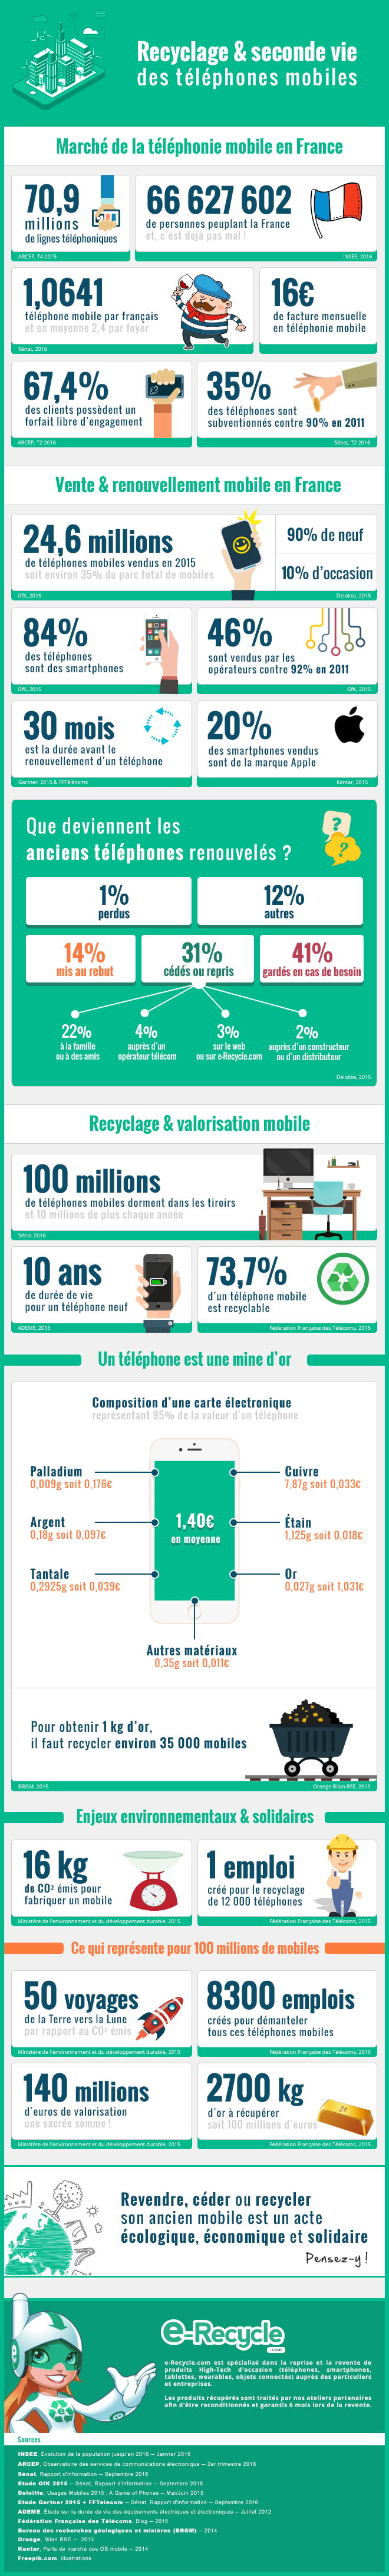 e-Recycle - Infographie - Recyclage et seconde vie des téléphones mobiles